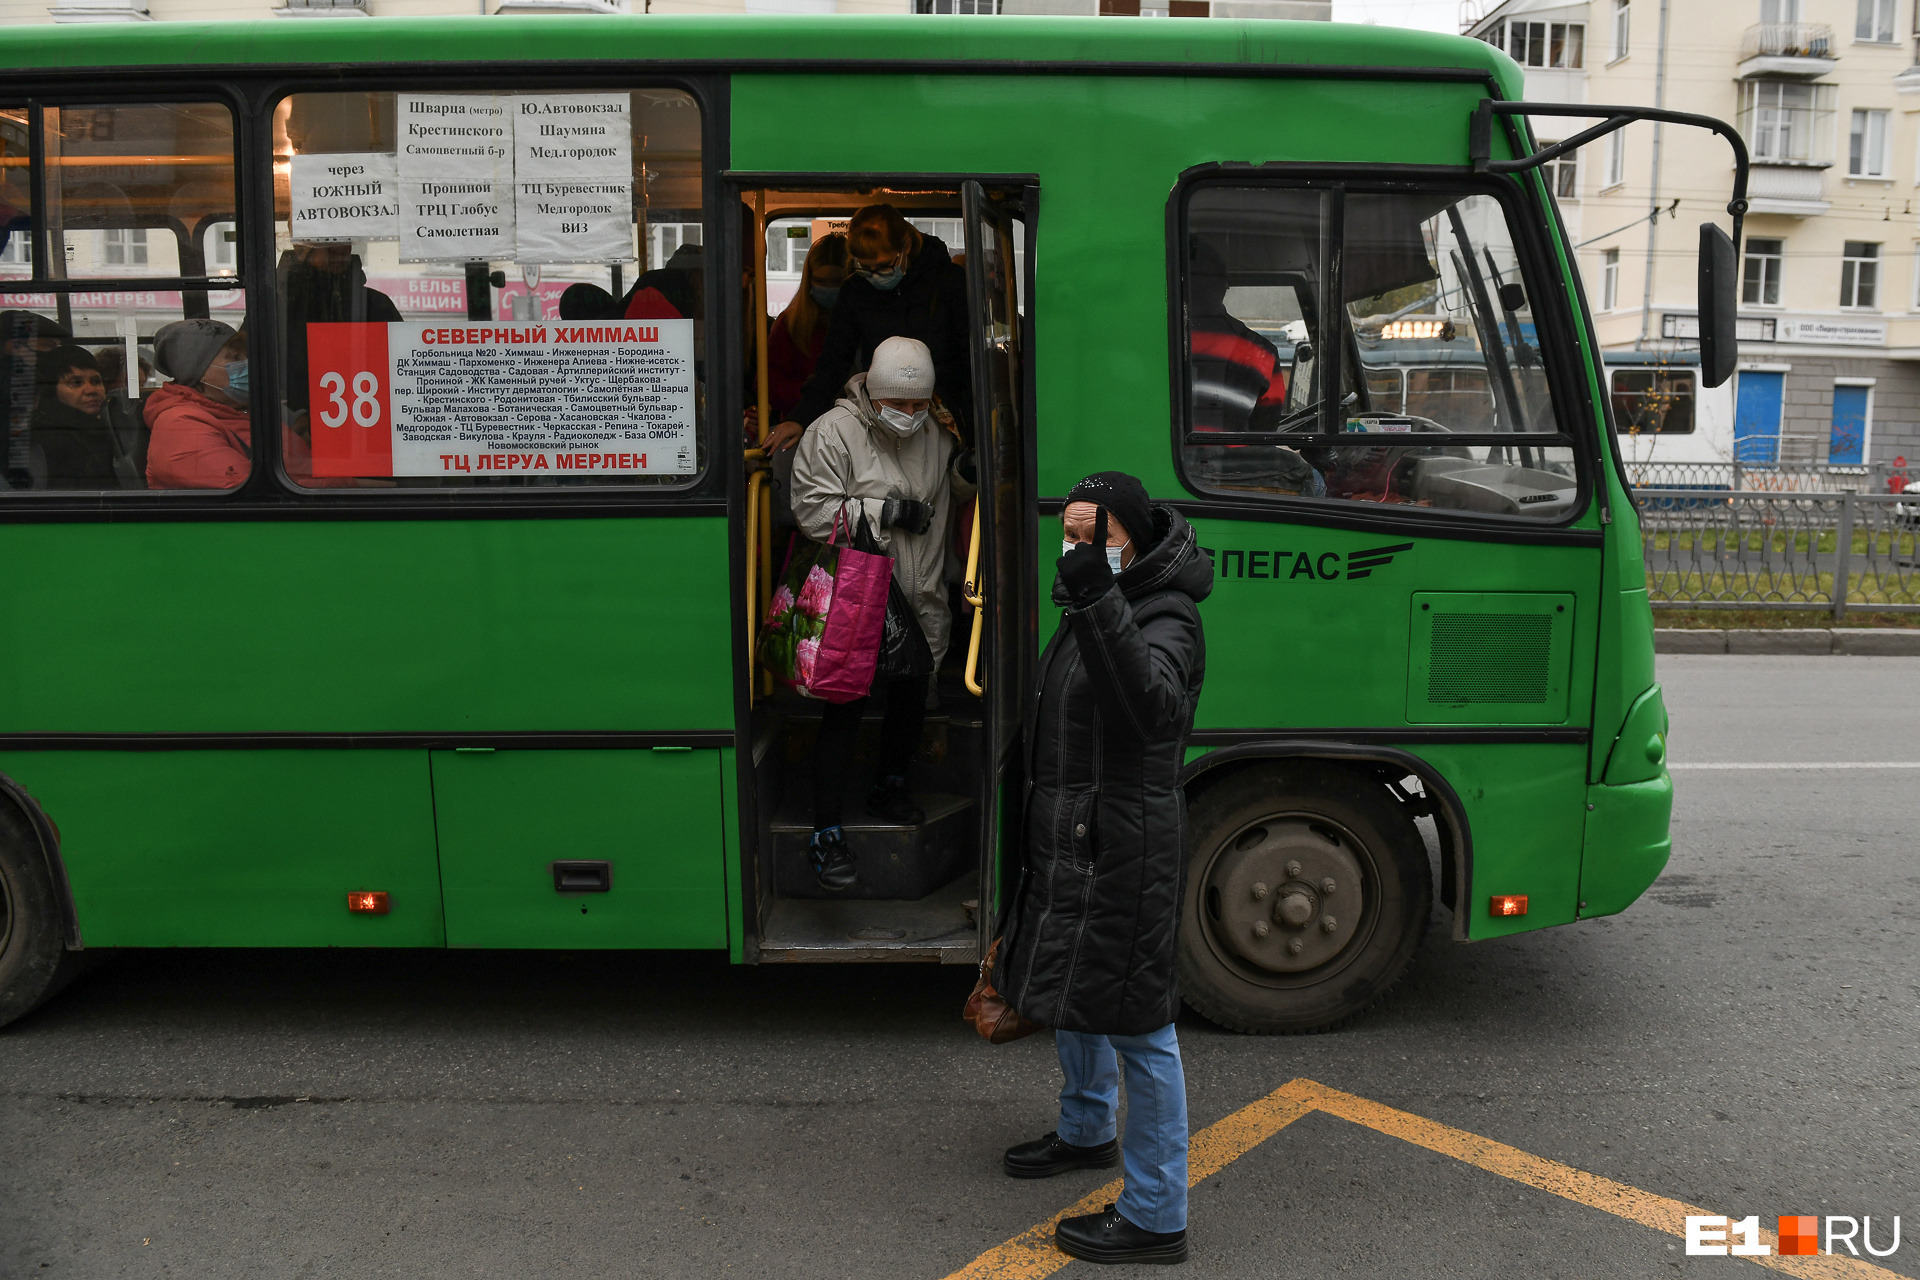 070 автобус екатеринбург